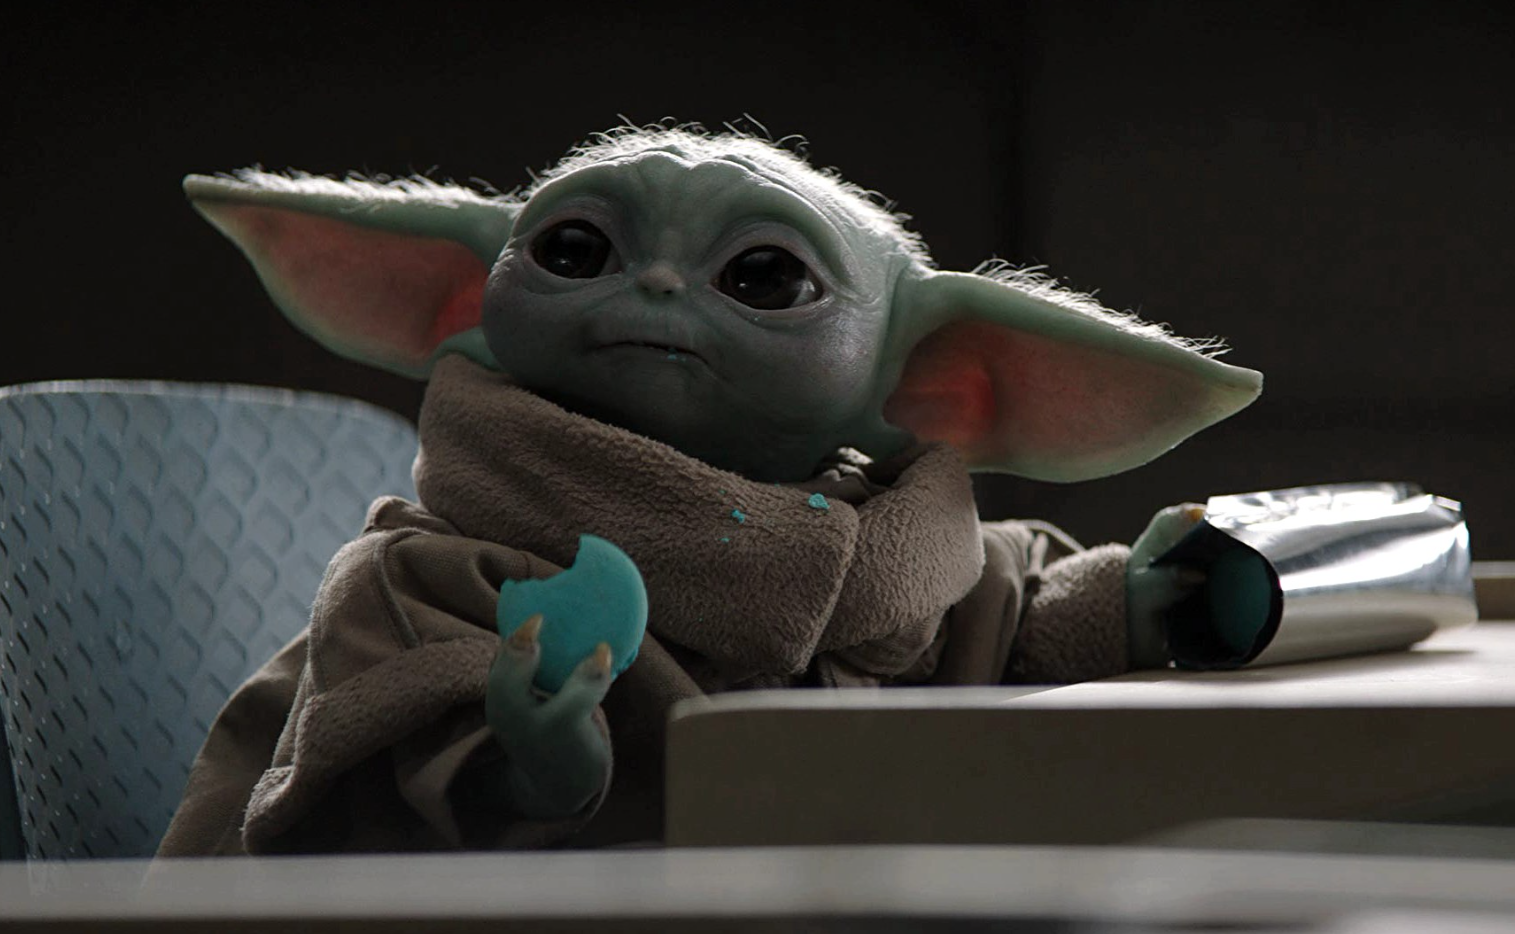  Rosca de reyes de Baby Yoda (o Grogu) para pedir hasta tu casa